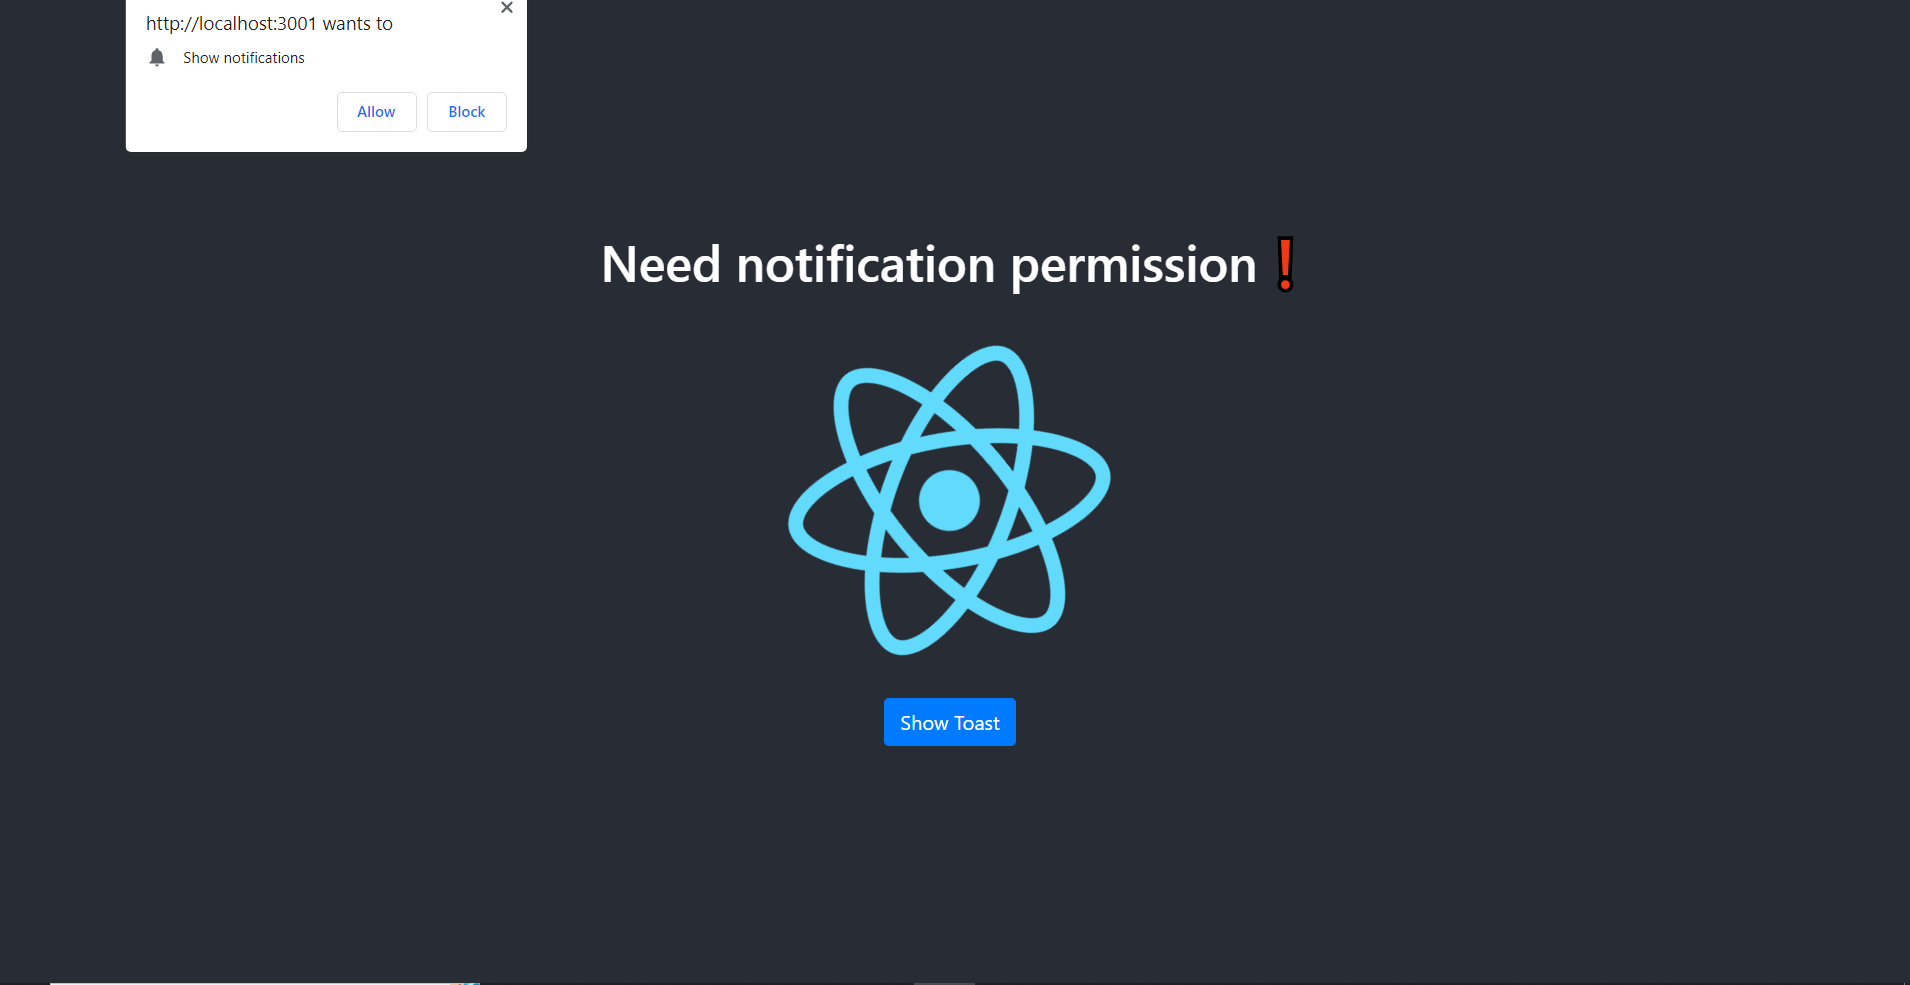 App screenshot: Allow notifications pop up